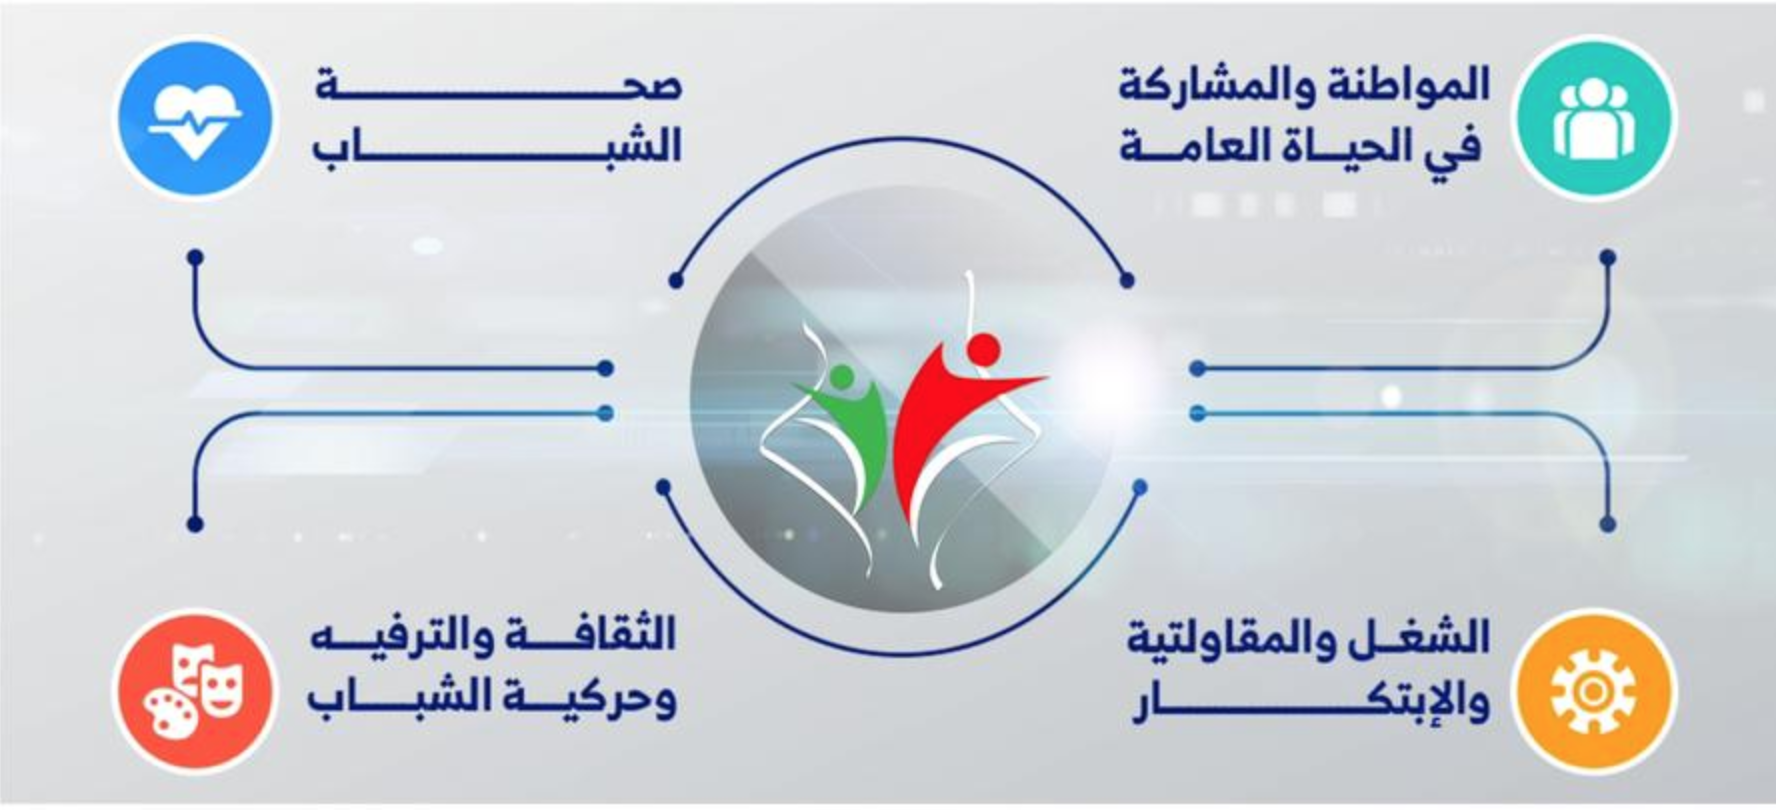 وزارة الشبا ب و الرياضة تطلق دعوة لتمويل مشاريع جمعيات شبانية